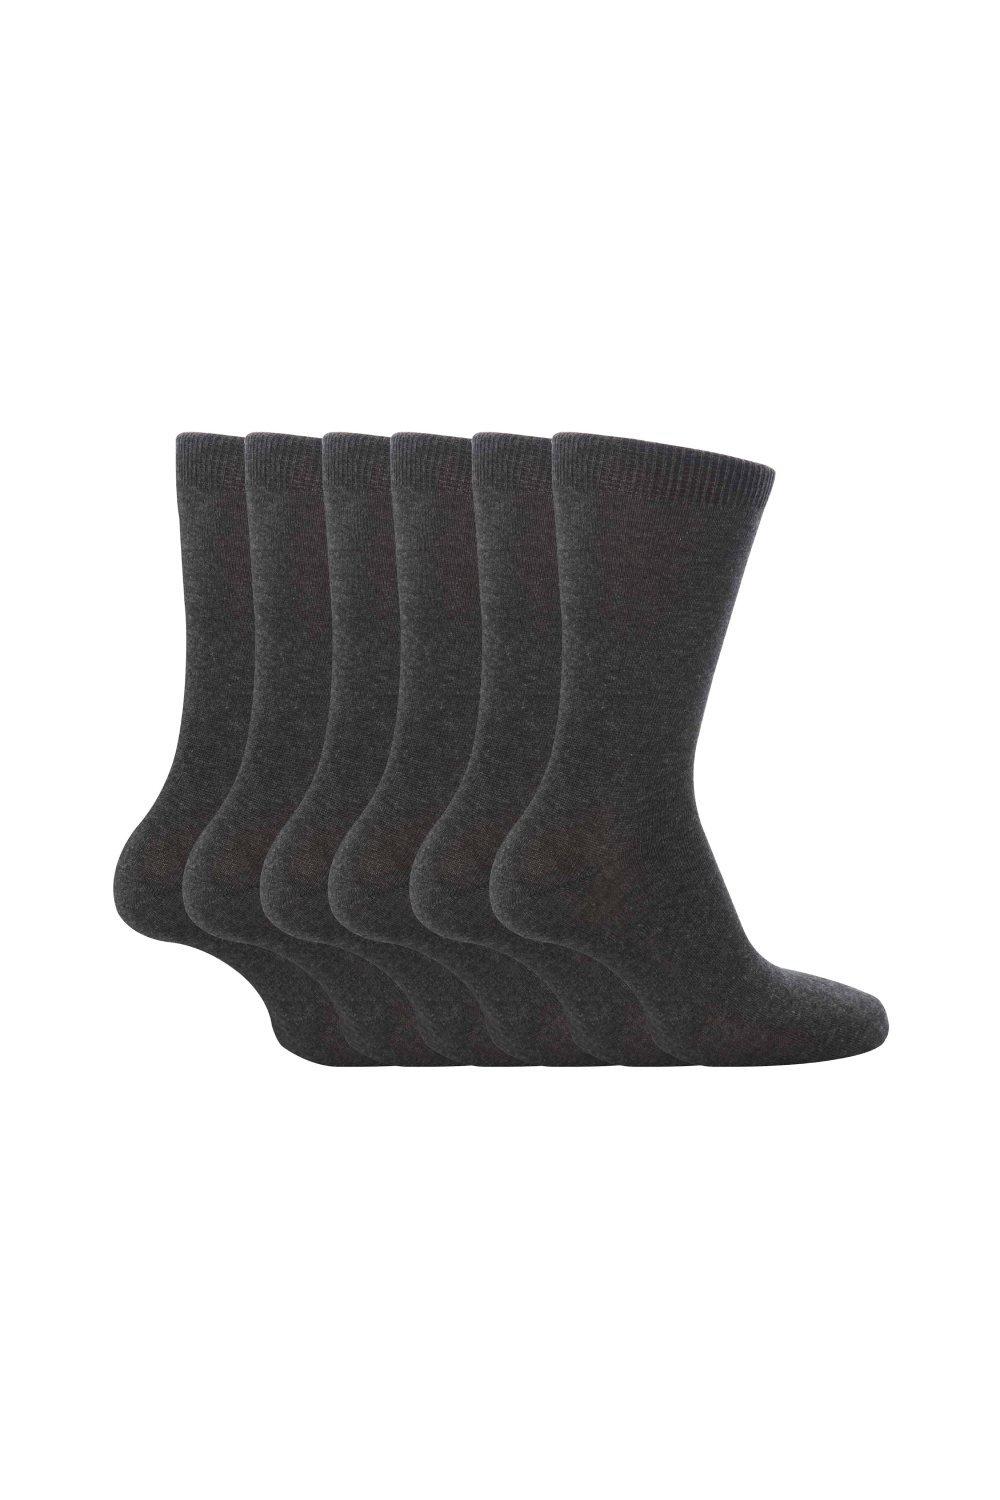 6 пар простых школьных мягких хлопковых носков Sock Snob, серый